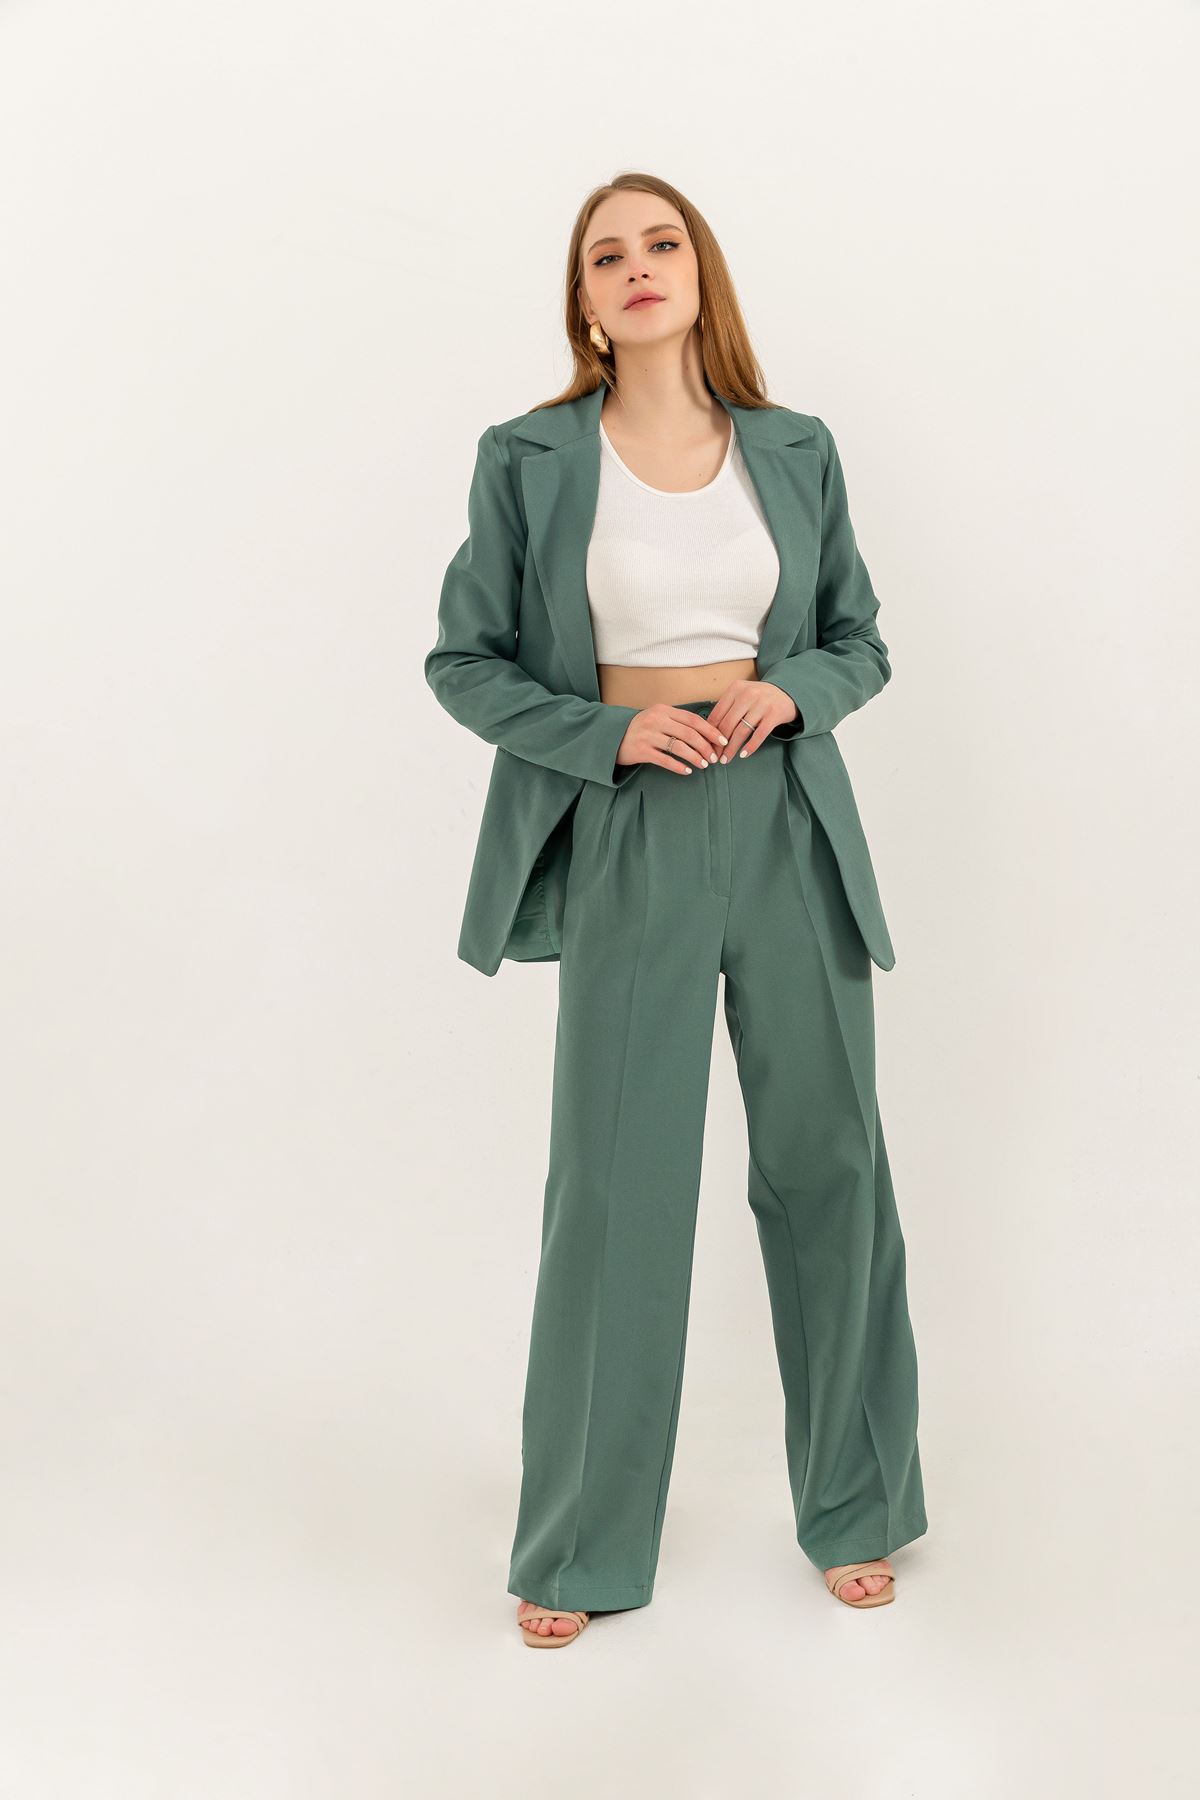 атлас ткань длинный рукав оверсайз женский пиджак-горчикновый зеленый 